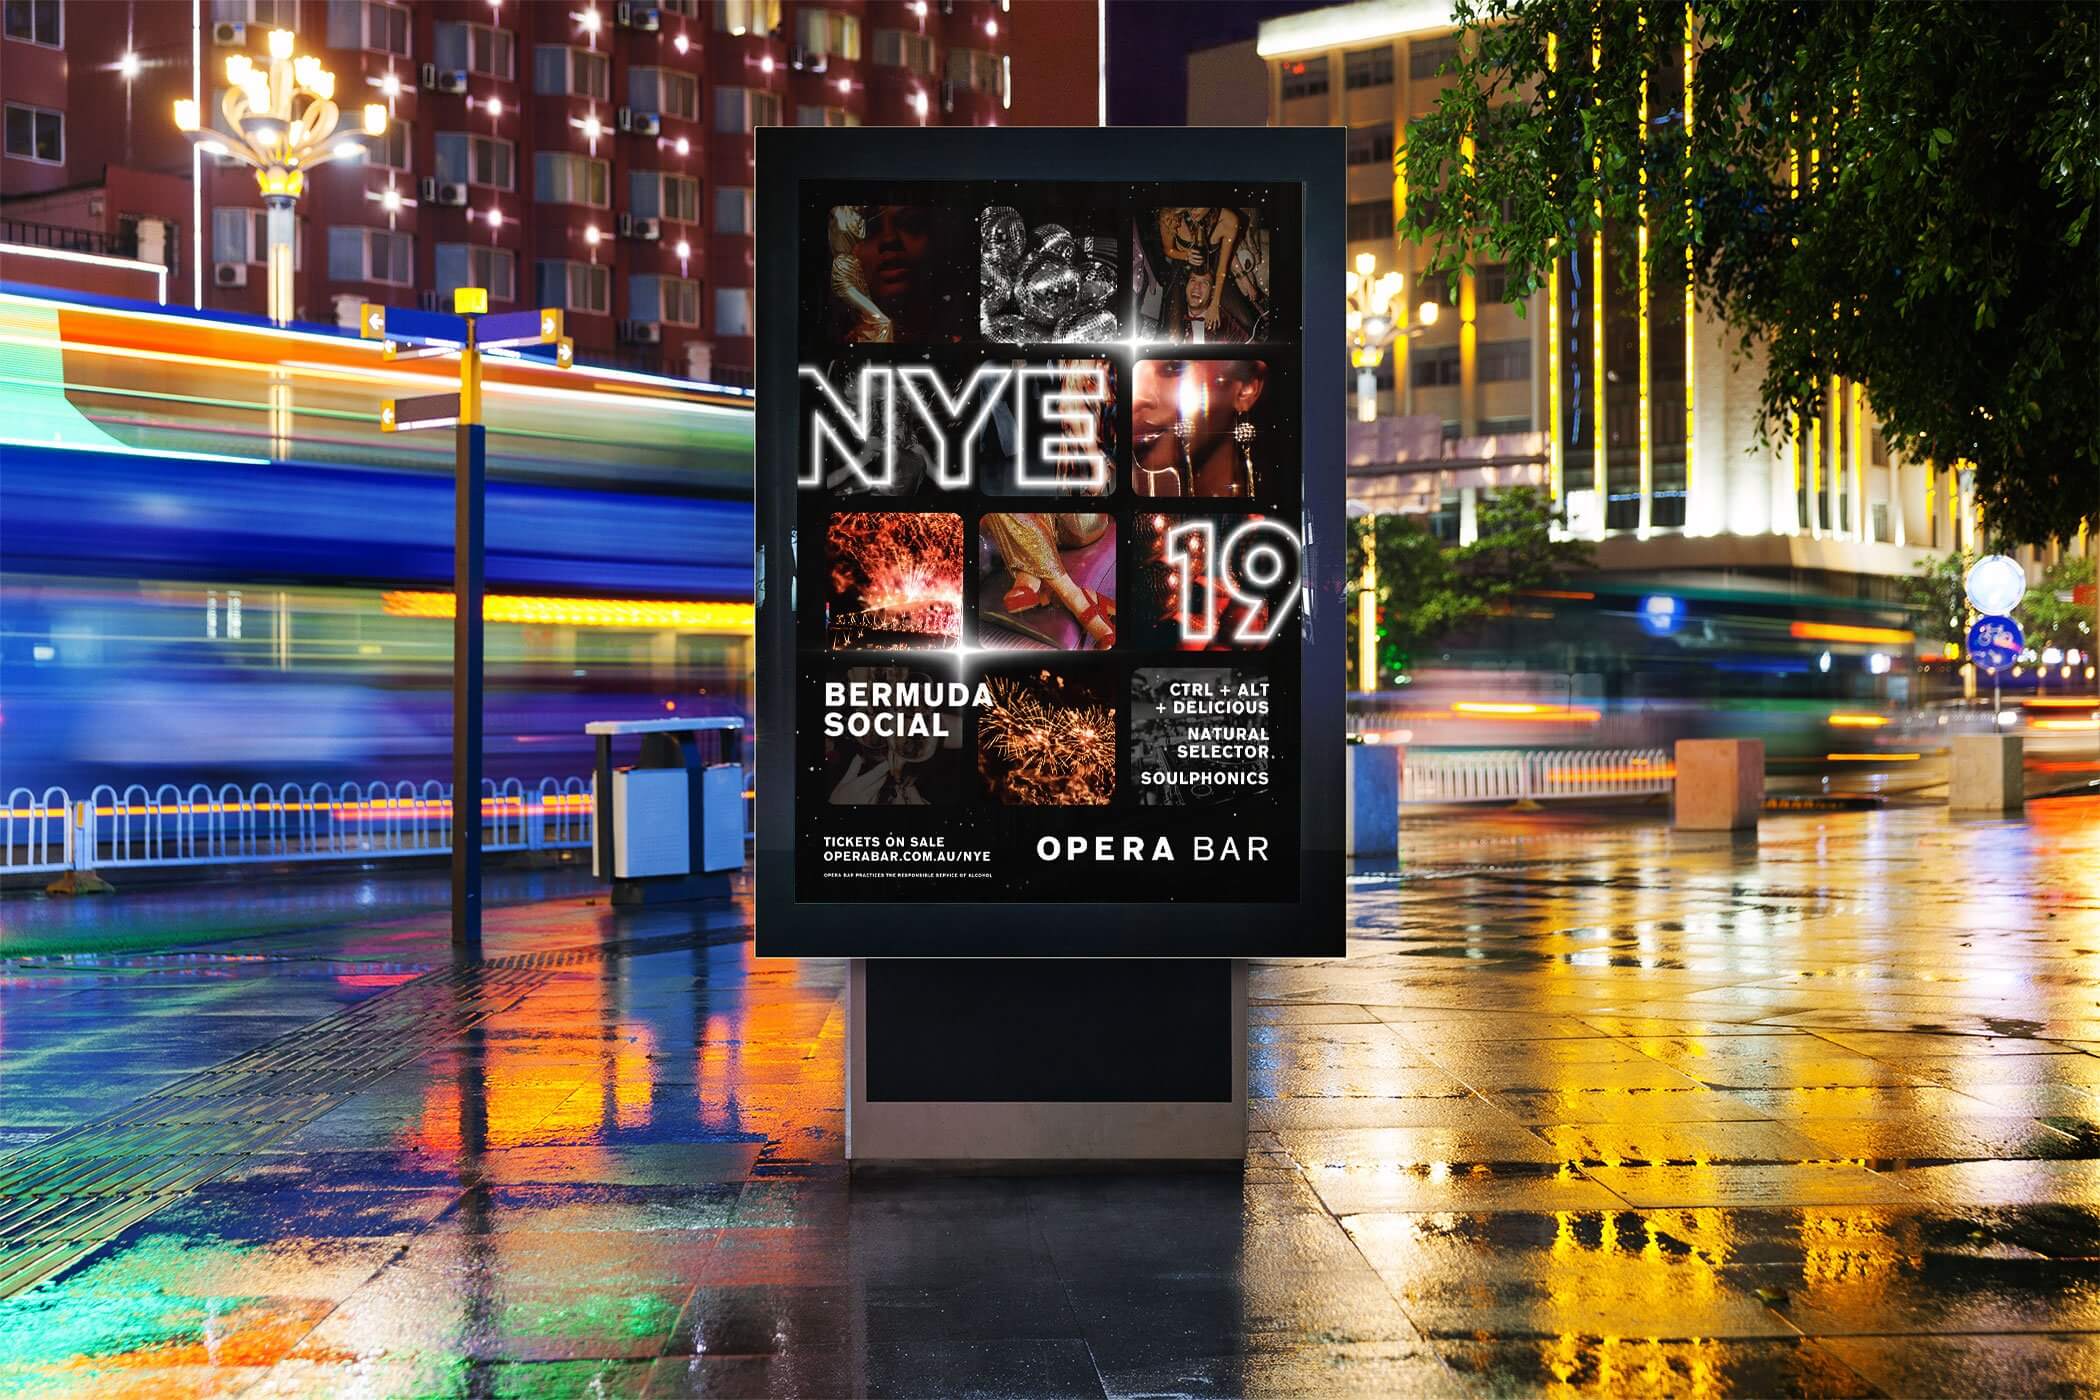 opera bar nye poster design by Distil